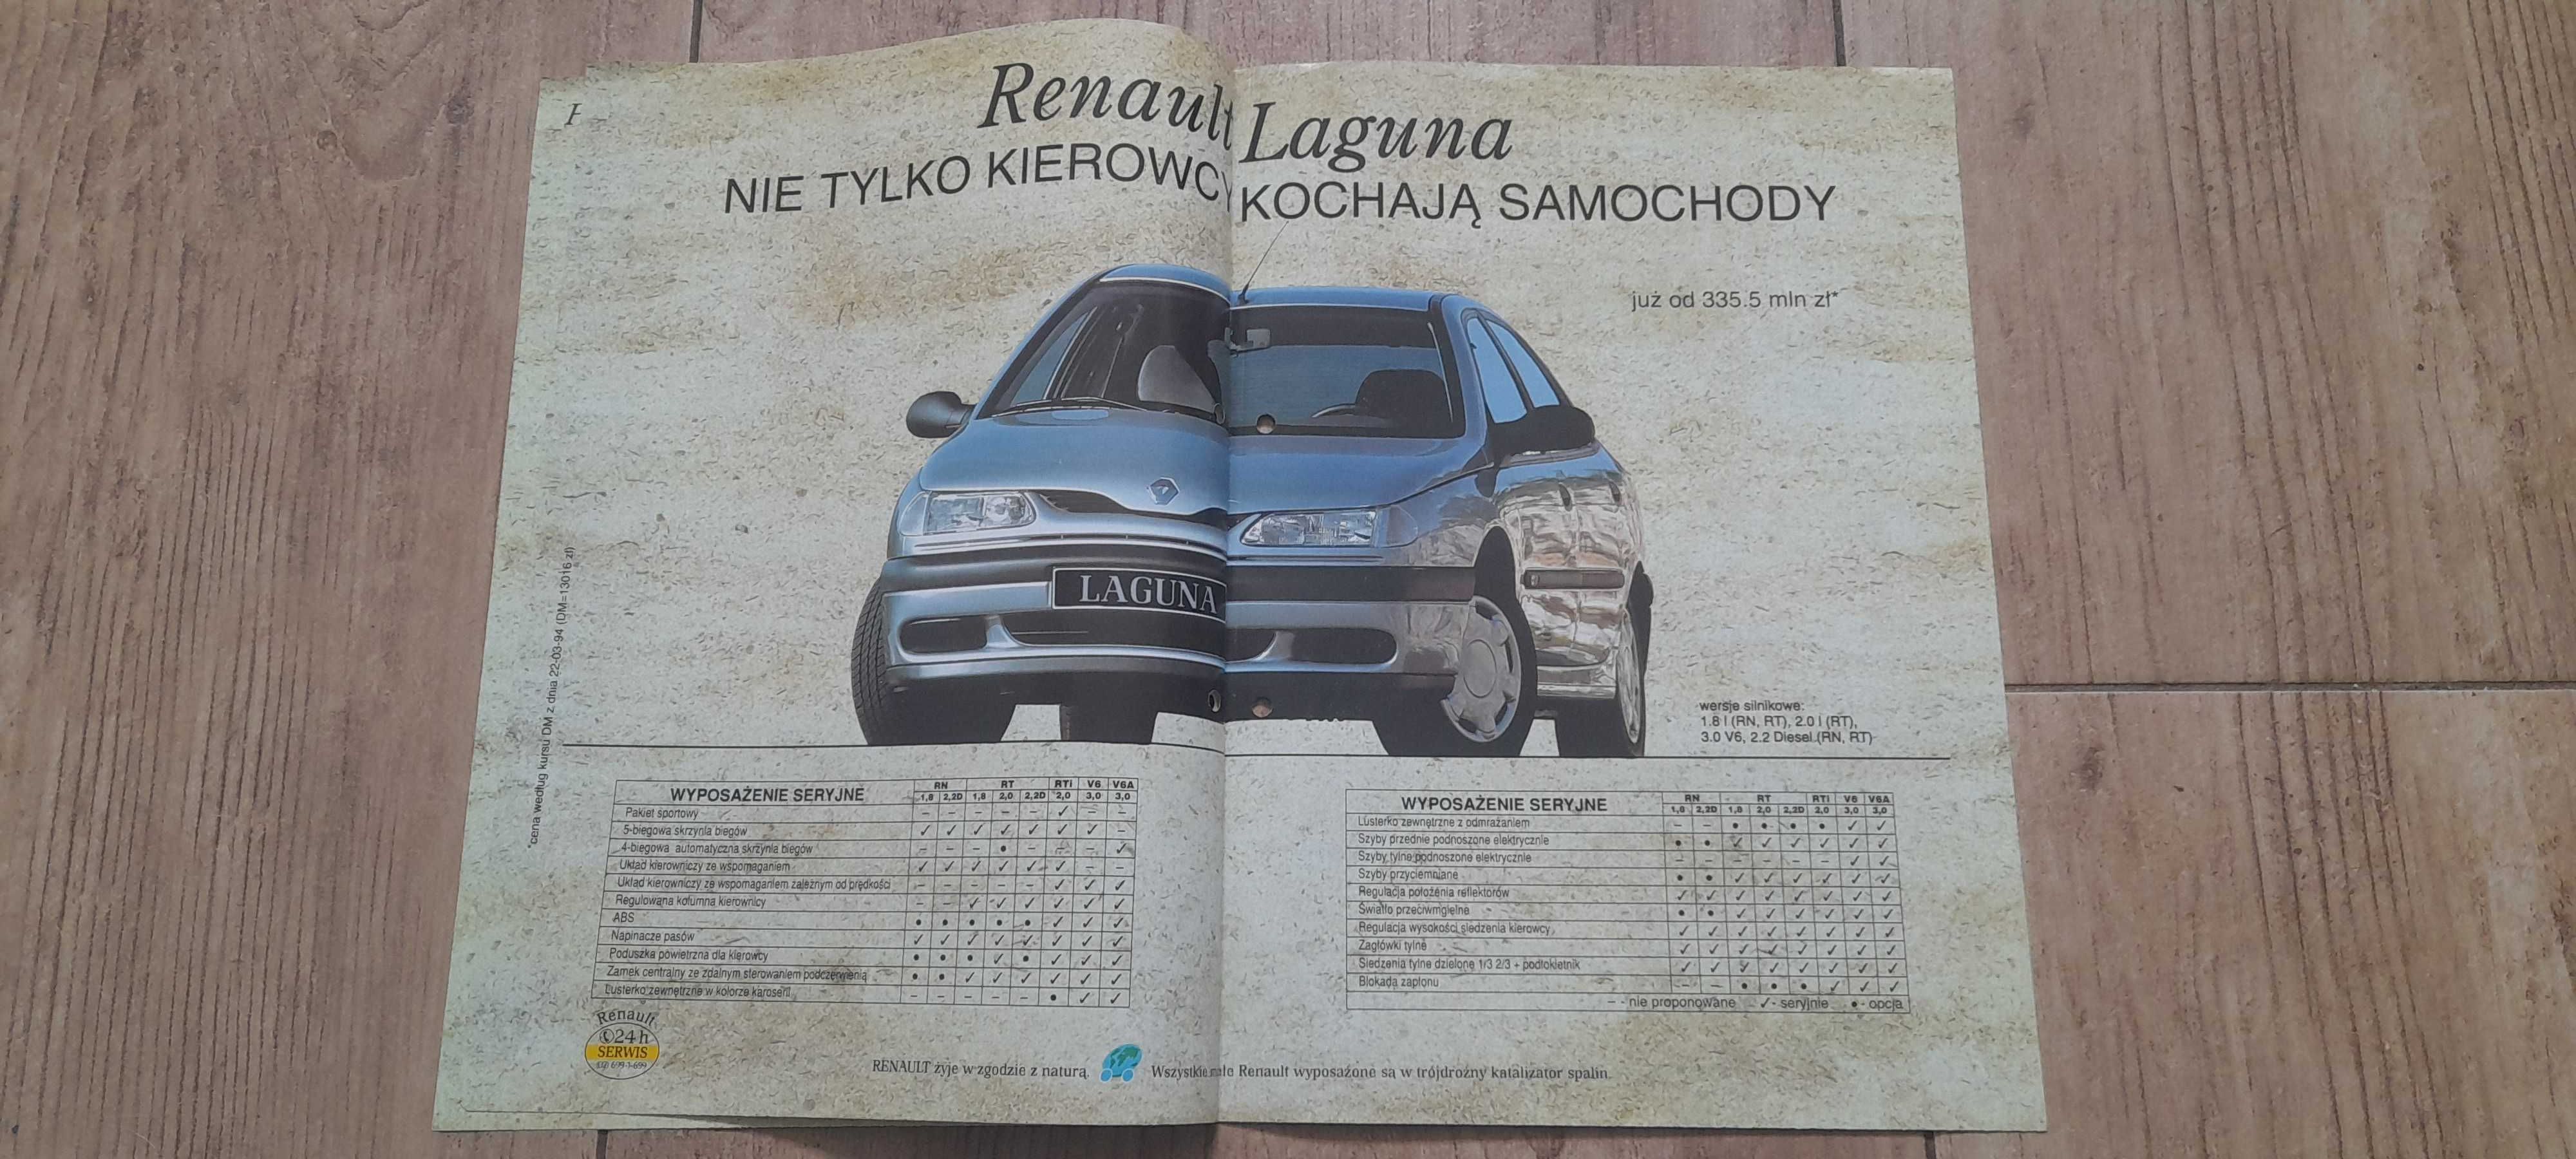 Renault dni otwartych drzwi 1994 prospekt polskojęzyczny, unikat